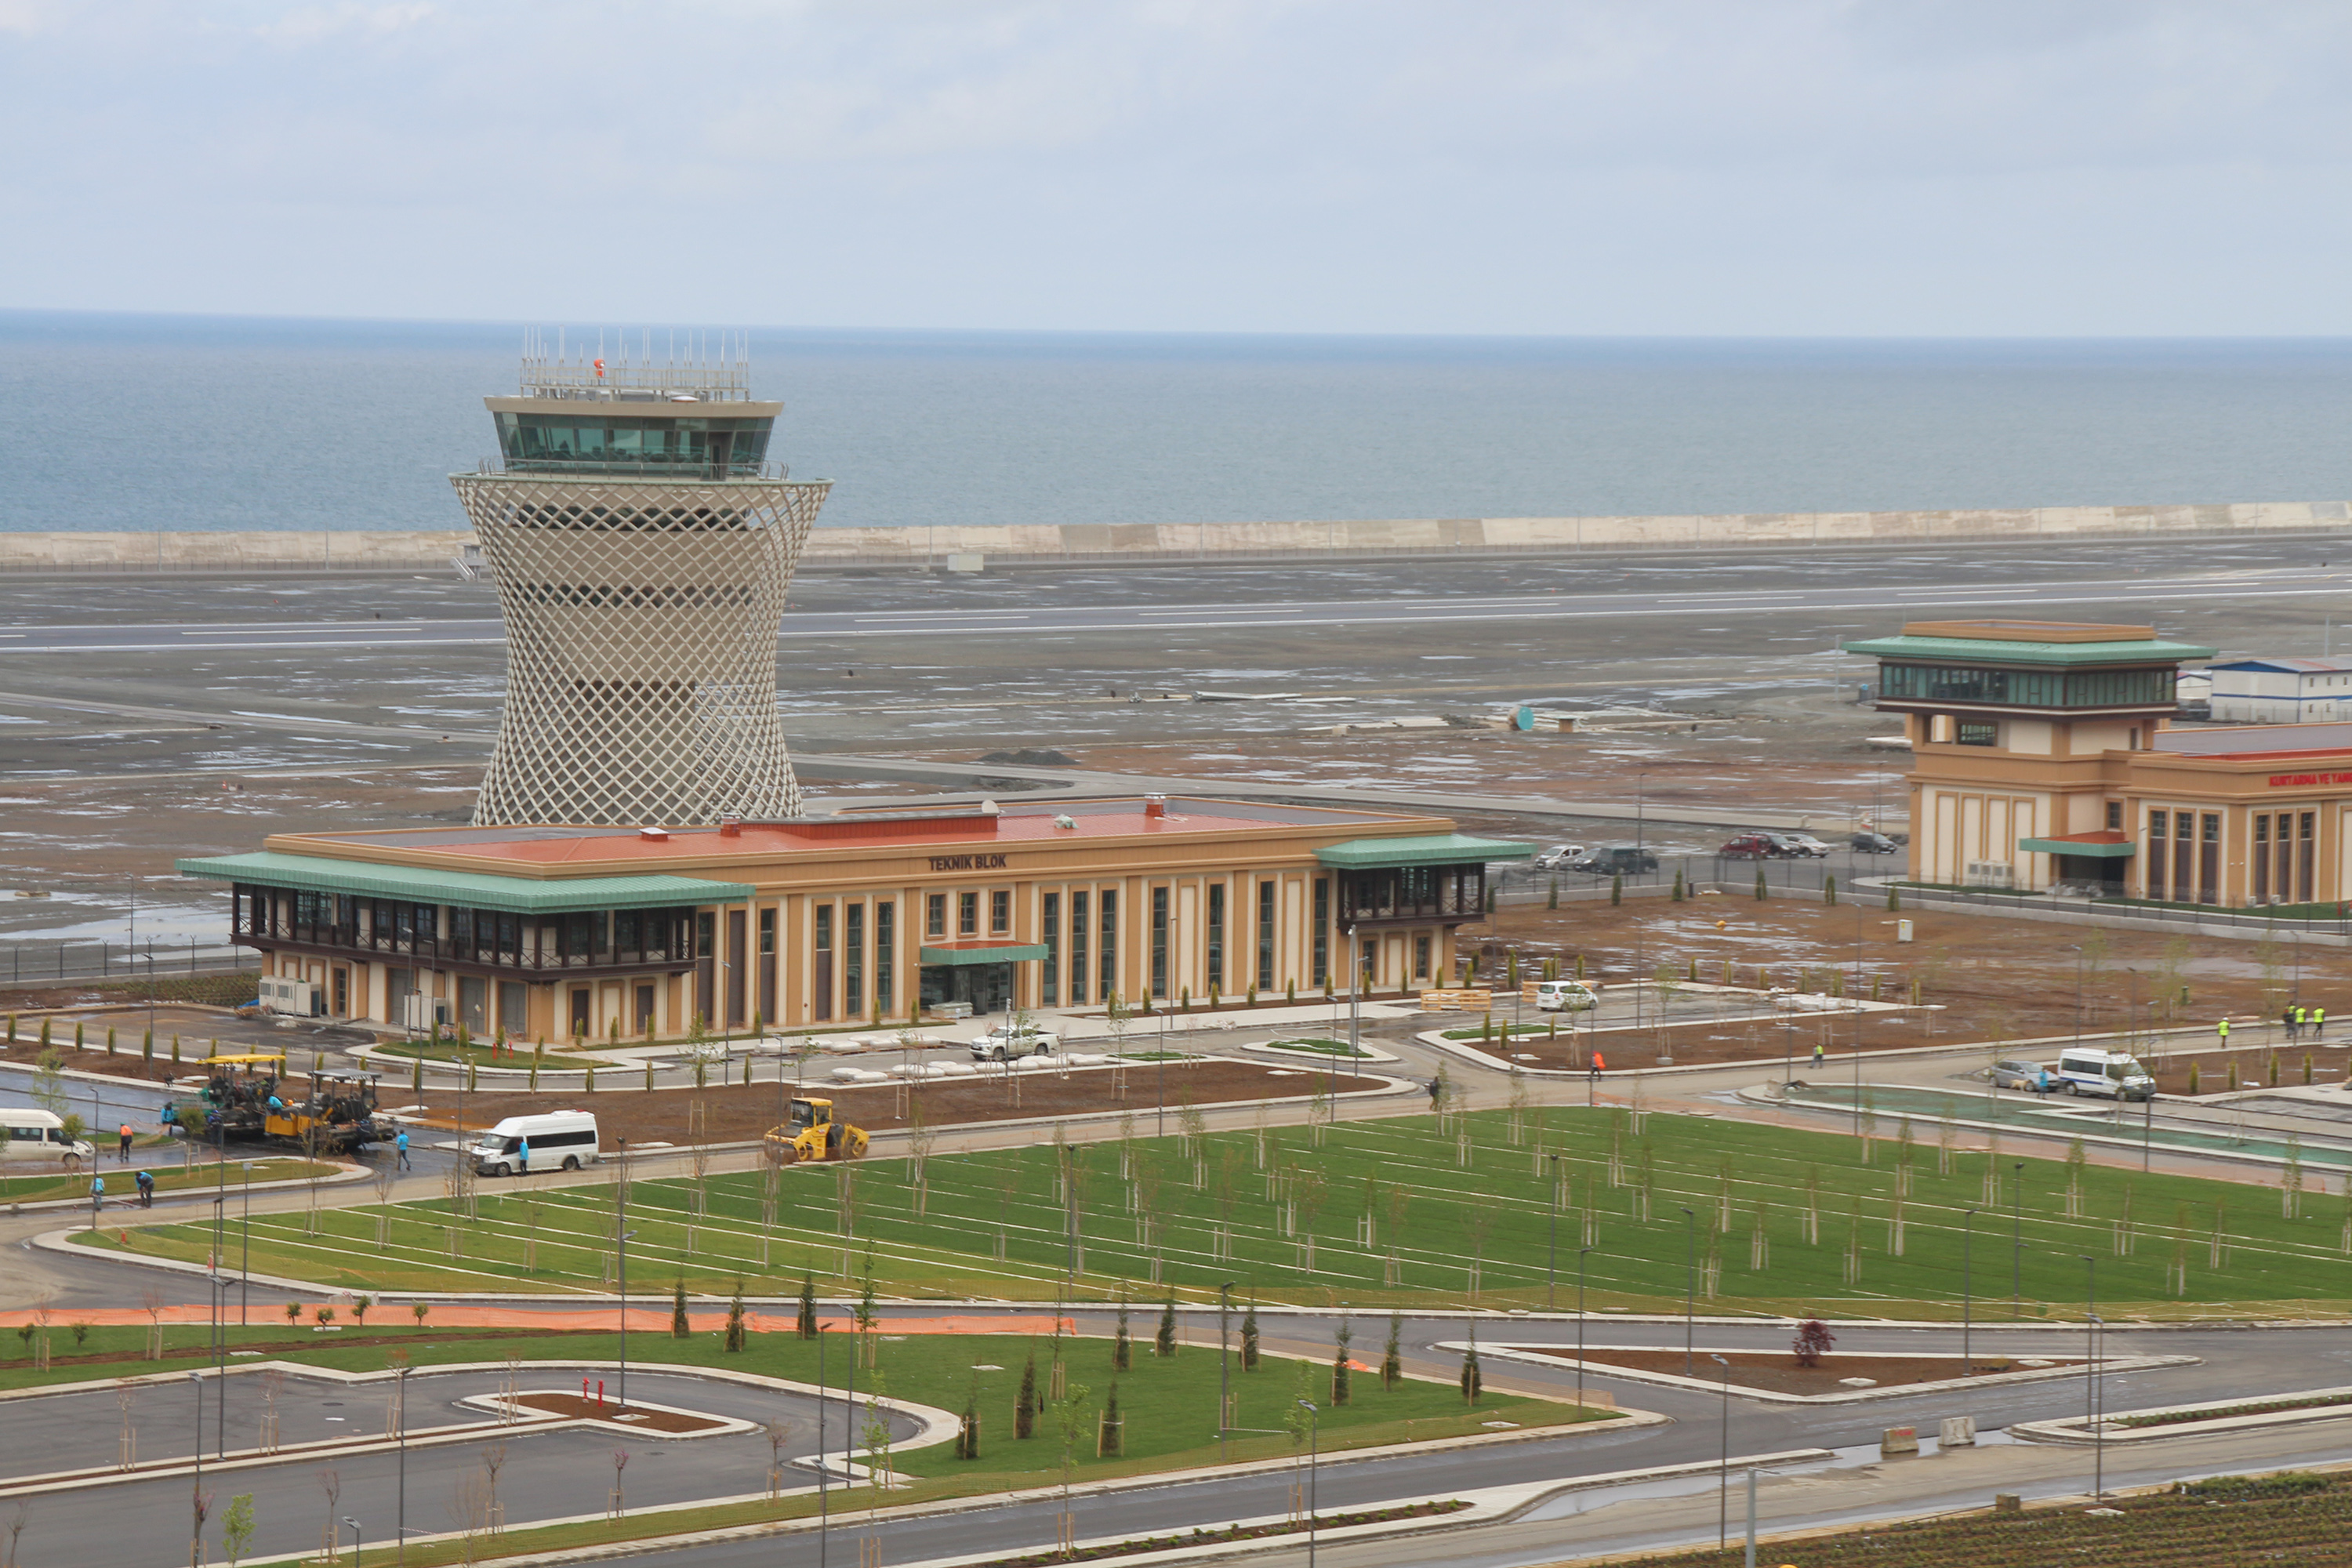 Ordu-Giresun Havalimanı'nın ardından deniz dolgusuna yapılacak Türkiye'deki ve Karadeniz Bölgesi'ndeki 2. havalimanı olma özelliğine sahip olacak Rize-Artvin Havalimanı projesinin inşaat çalışmalarında sona gelindi.